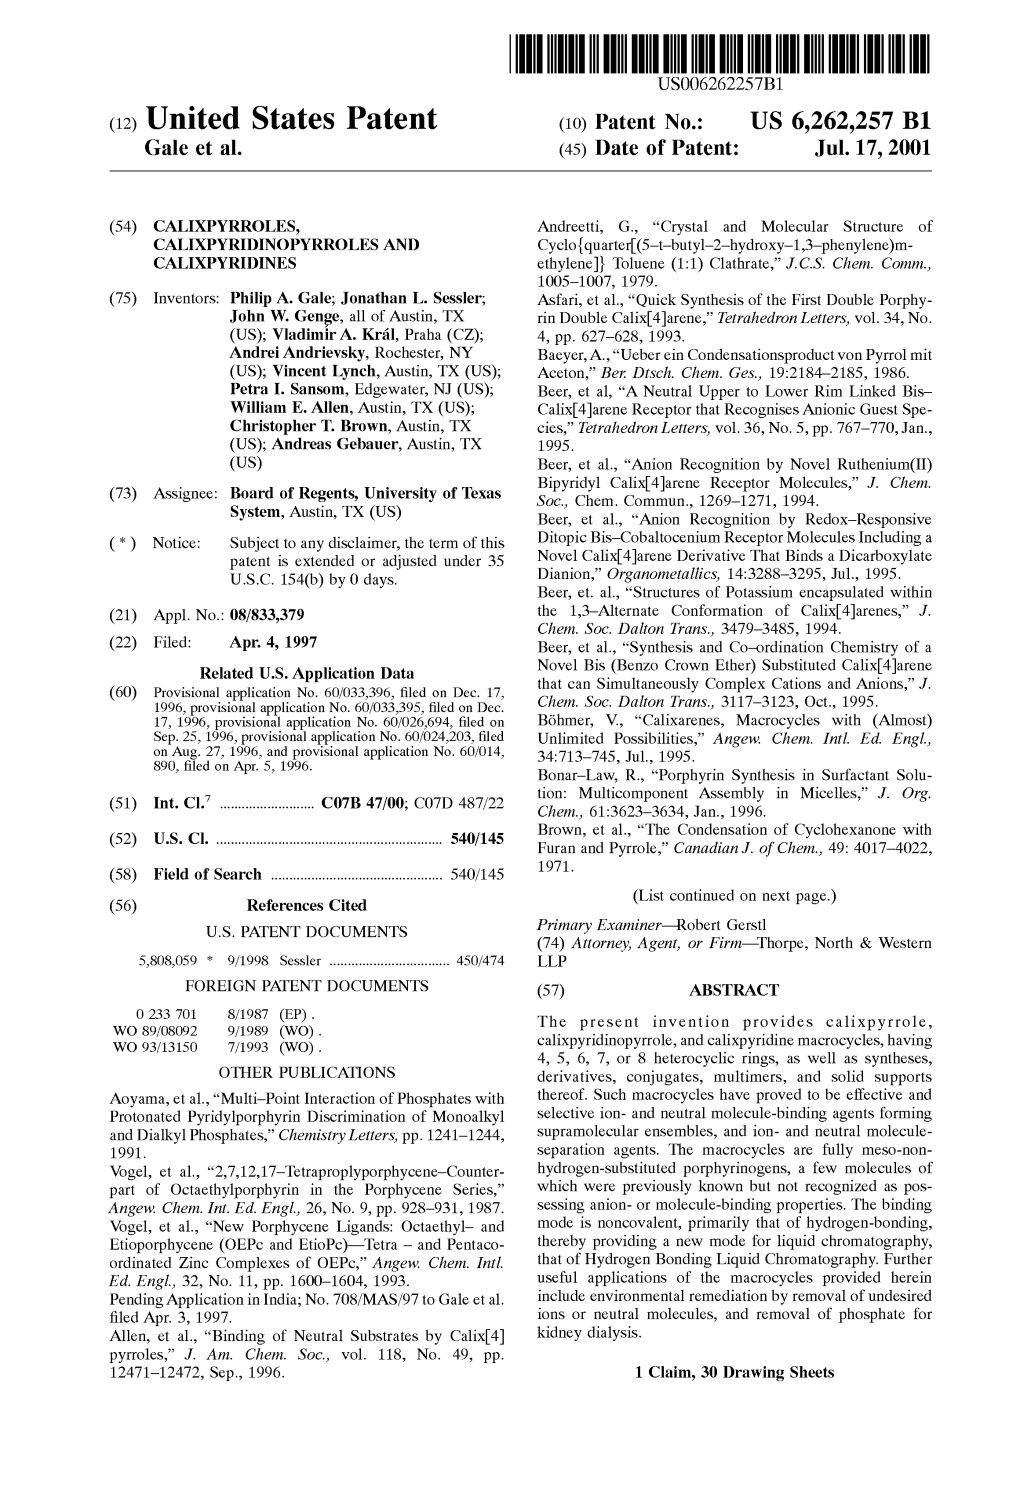 (12) United States Patent (73) Assignee: Ls3oard Ofareg